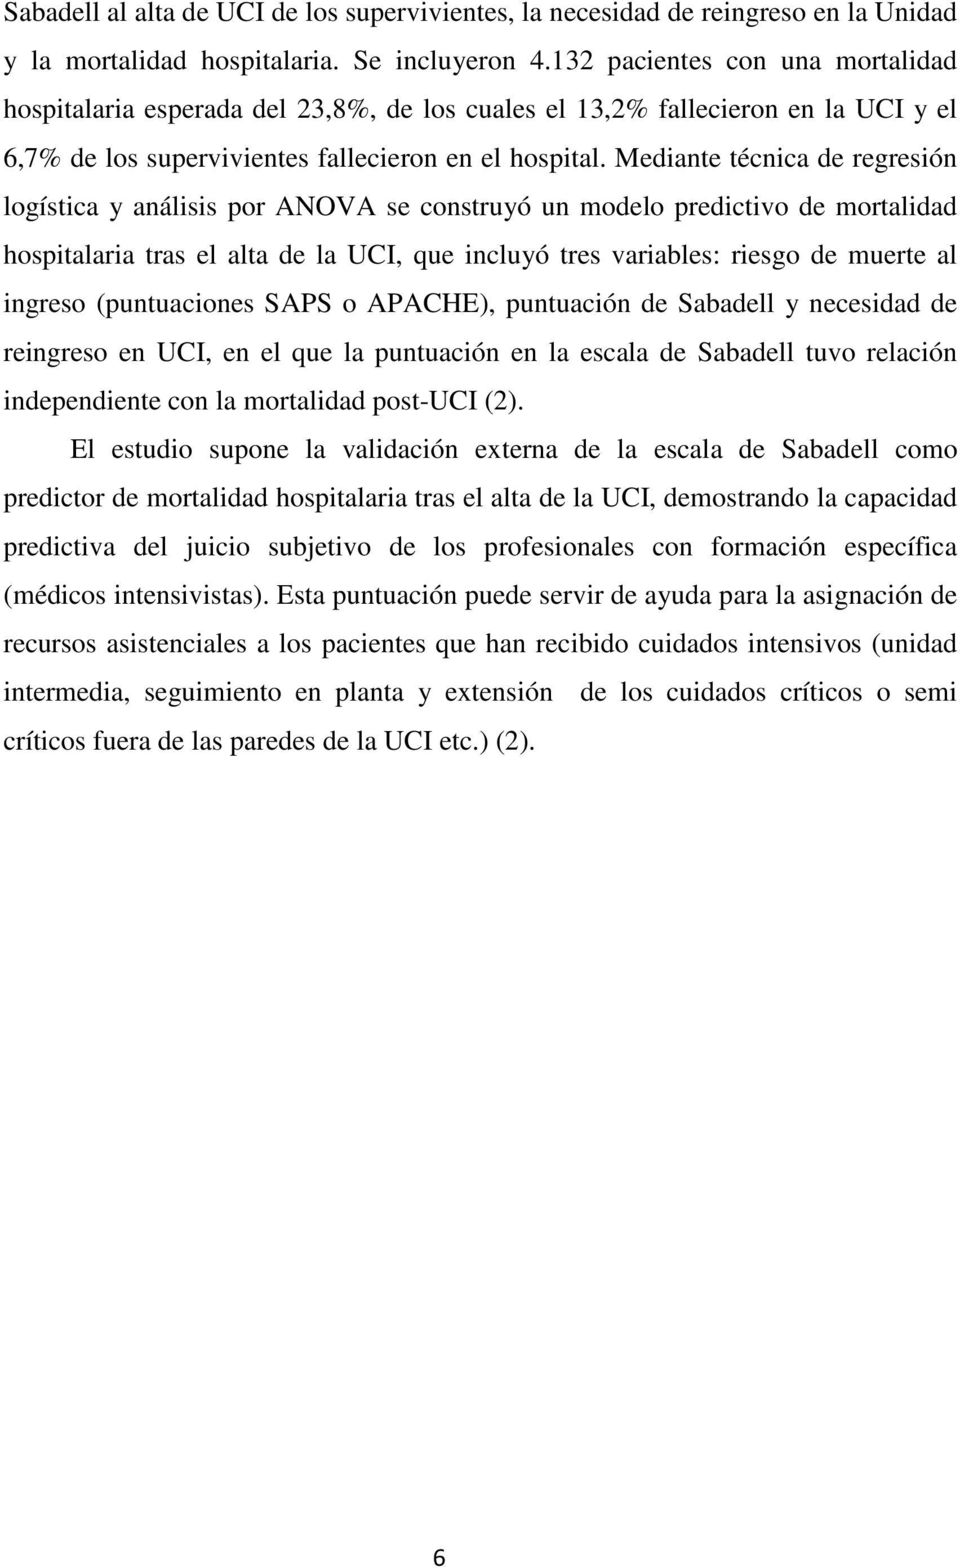 Mediante técnica de regresión logística y análisis por ANOVA se construyó un modelo predictivo de mortalidad hospitalaria tras el alta de la UCI, que incluyó tres variables: riesgo de muerte al